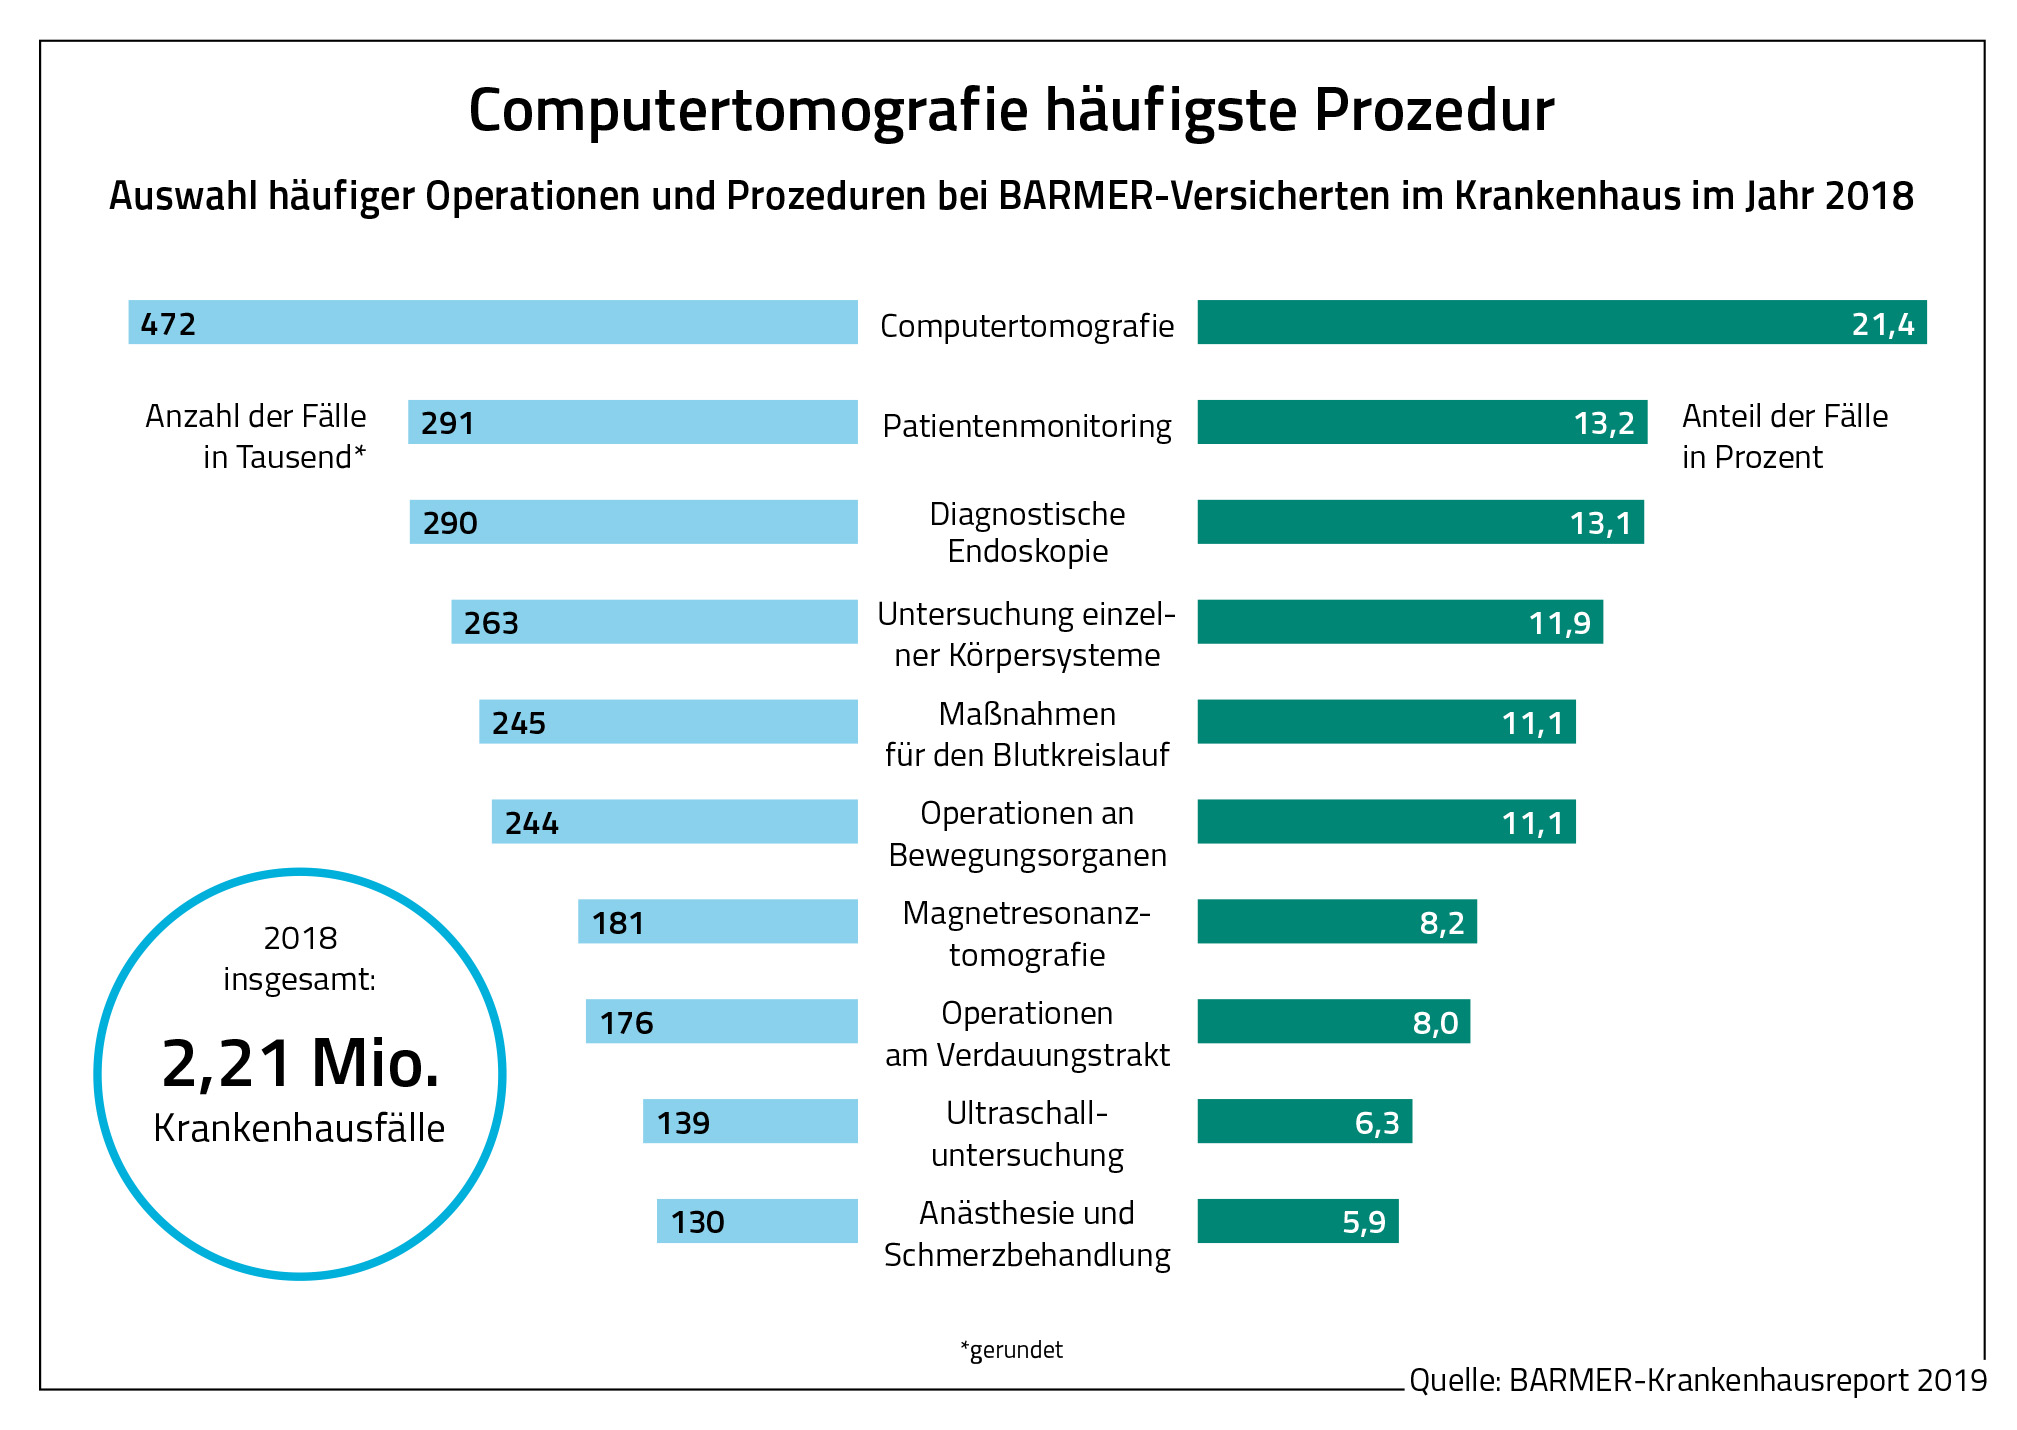 Die Grafik zeigt, dass die Computertomografie die am häufigsten angewandte Prozedur bei Barmer-Versicherten im Jahr 2018 war